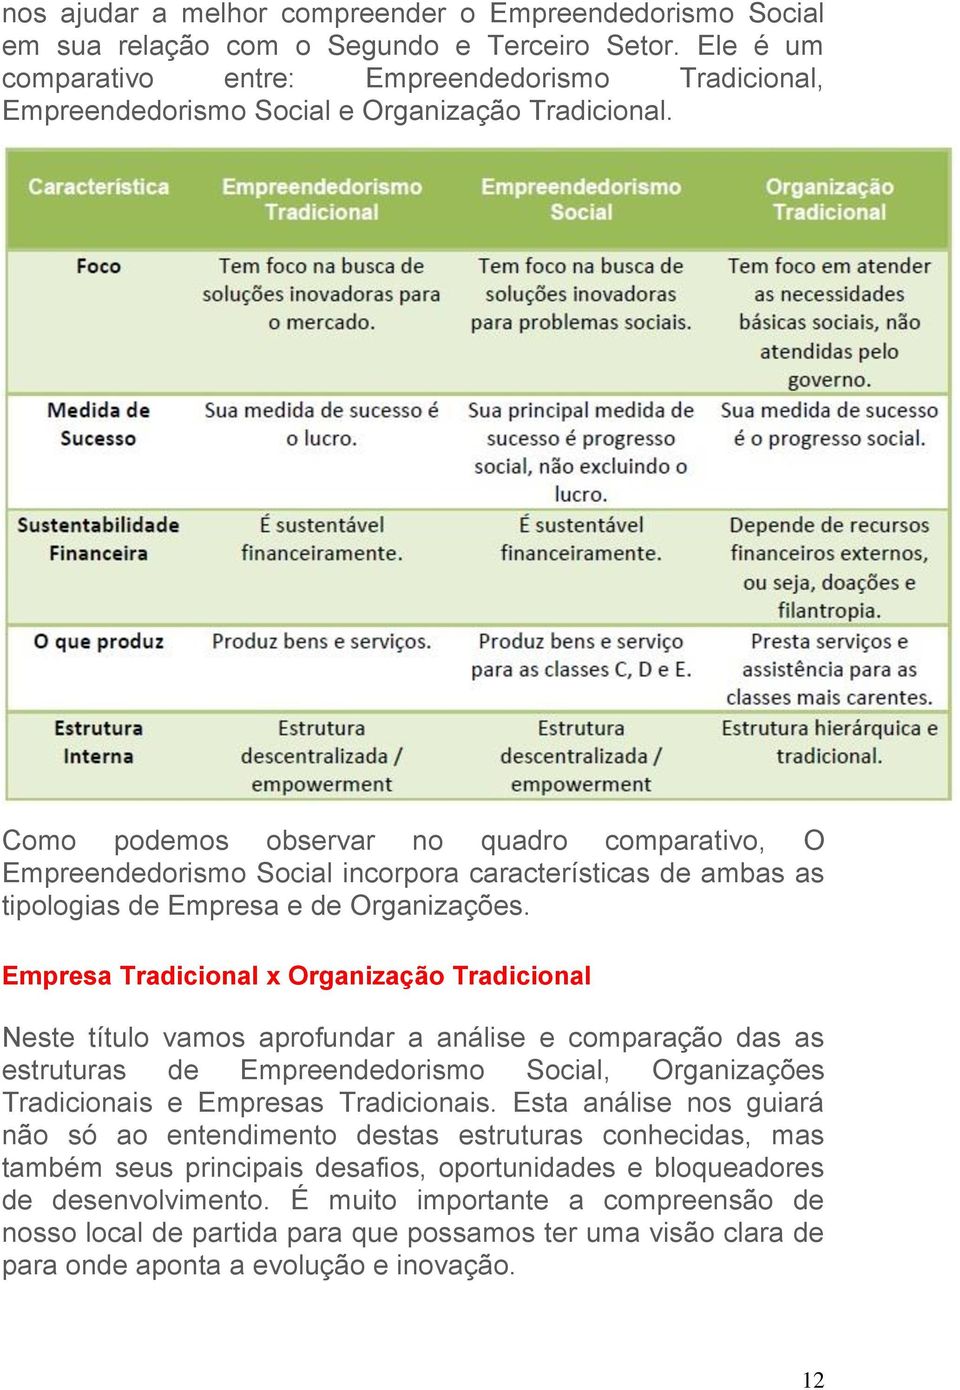 Como podemos observar no quadro comparativo, O Empreendedorismo Social incorpora características de ambas as tipologias de Empresa e de Organizações.